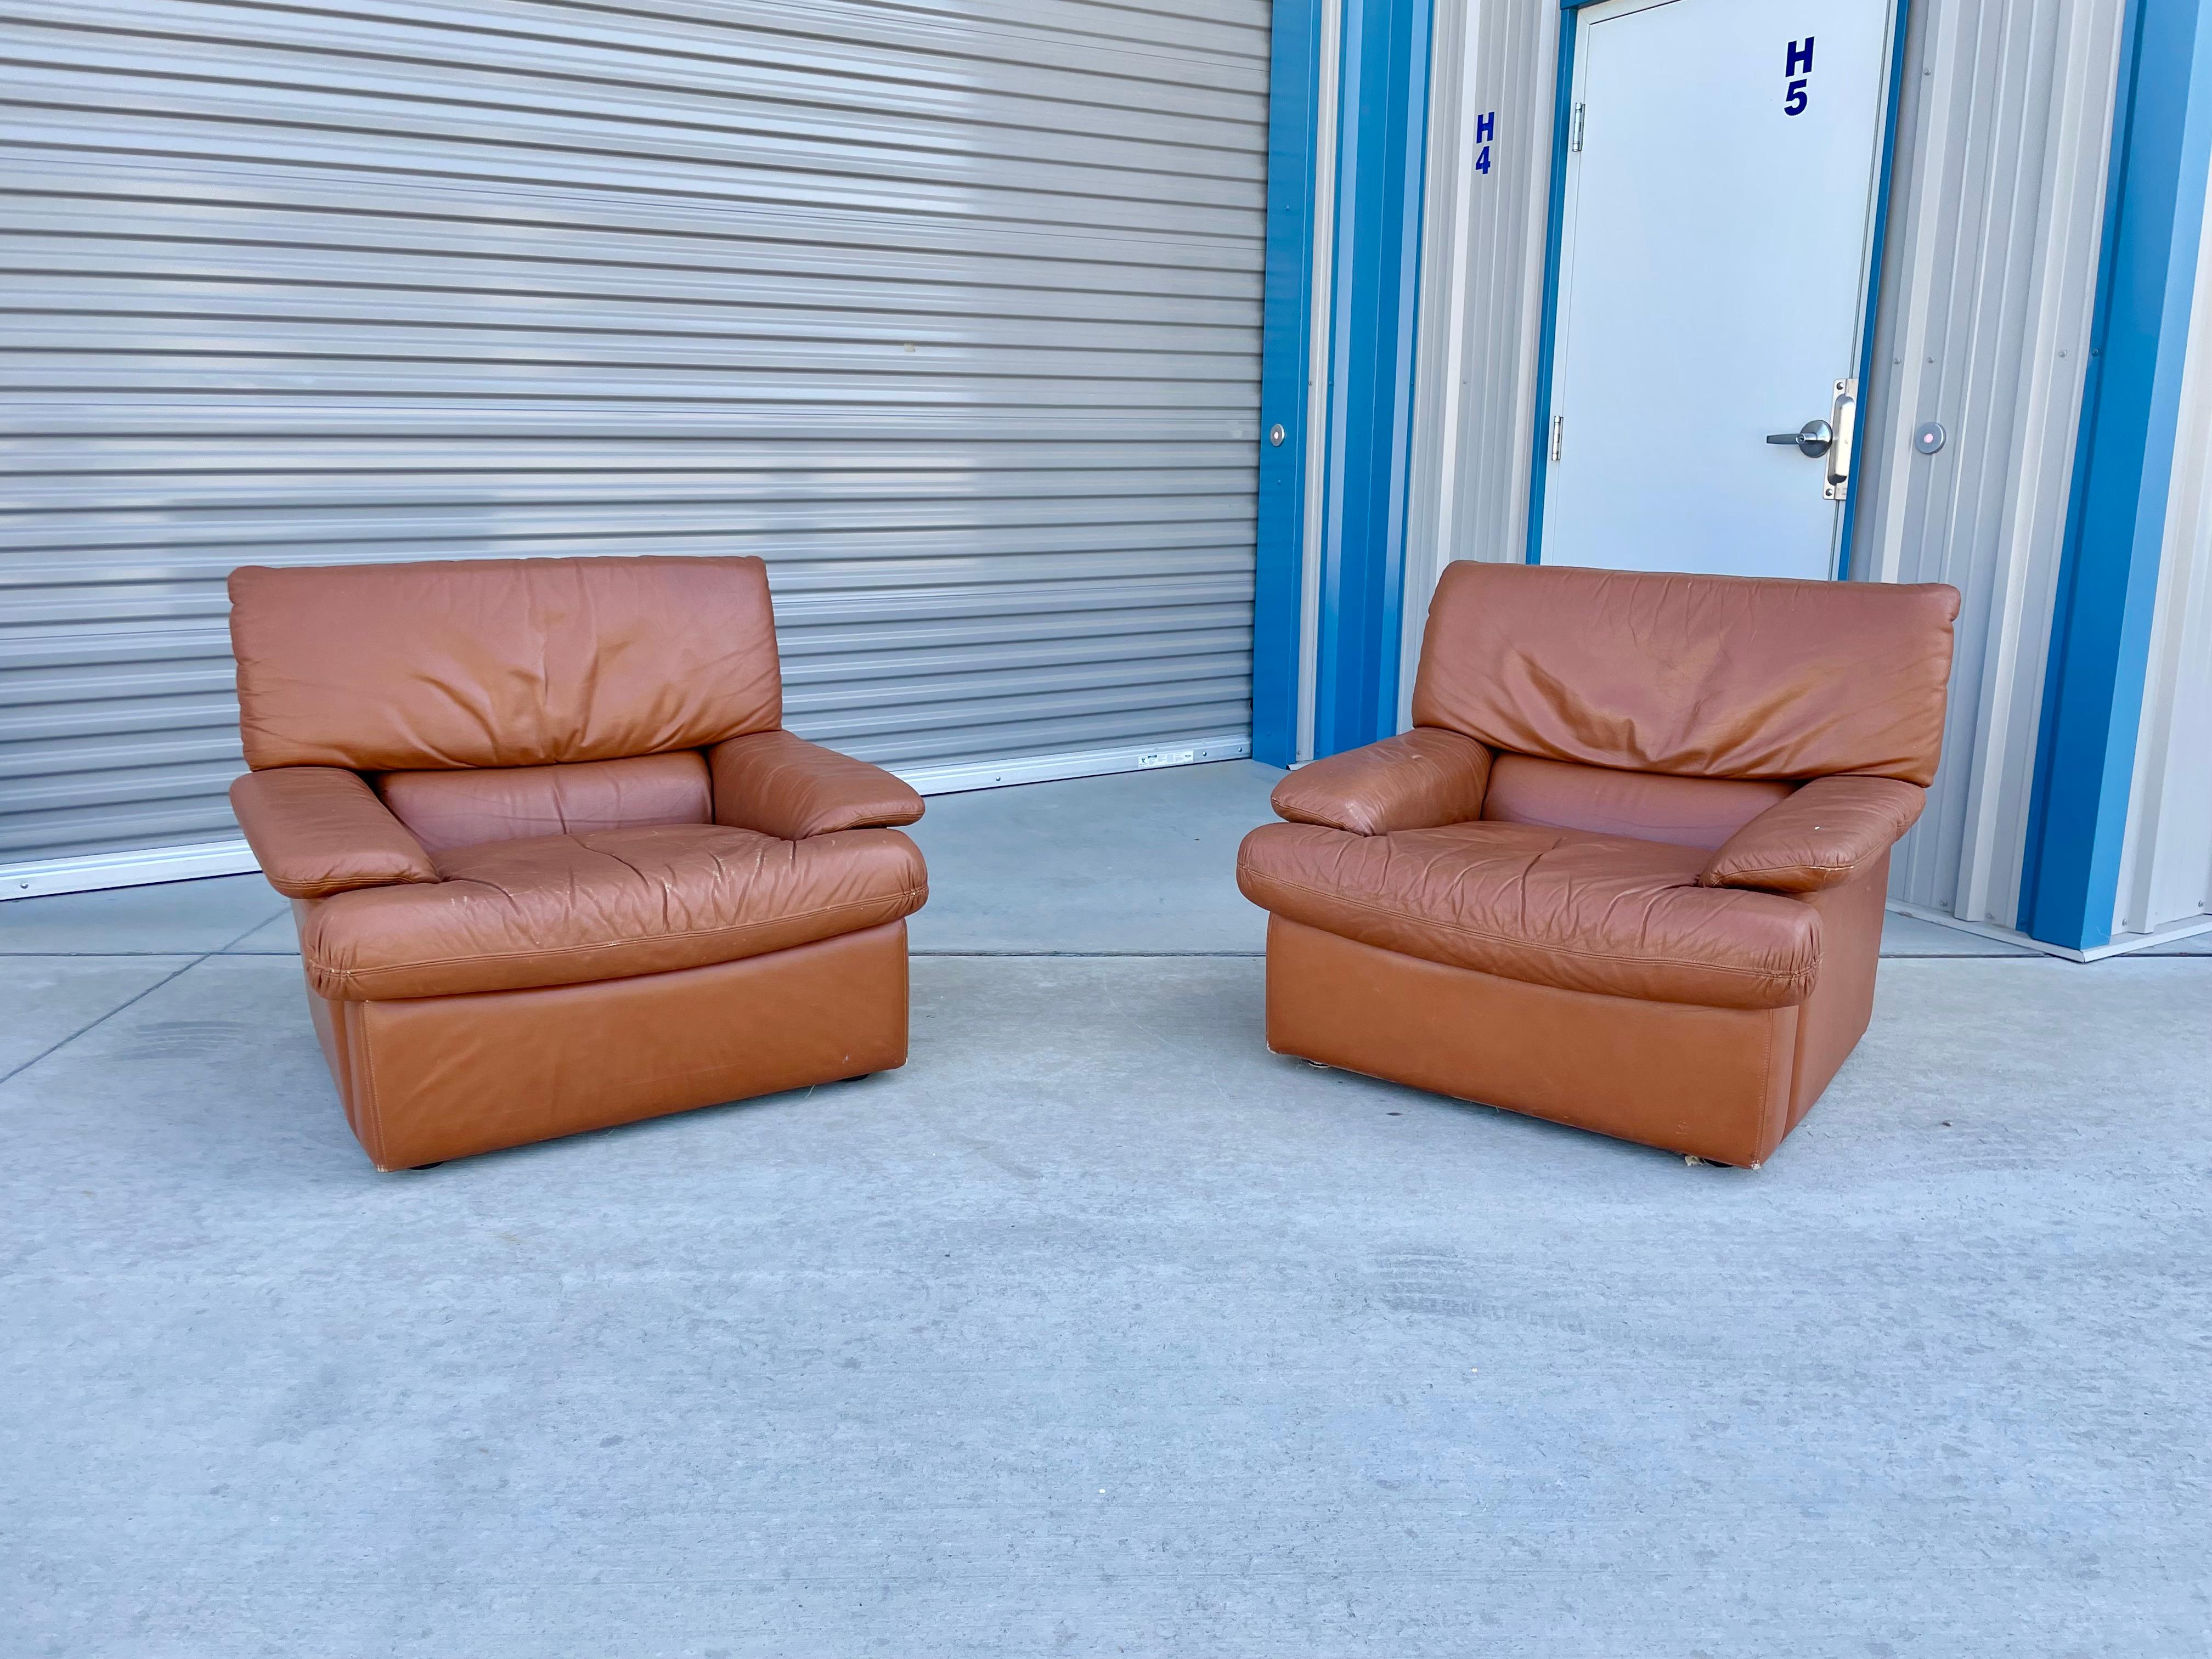 Vintage-Loungesessel aus Leder im Stil von De Sede, hergestellt in Italien um 1970. Diese Sessel sind aufgrund ihrer Größe das perfekte Paar für Ihr Wohnzimmer. Die Stühle haben auch eine orangefarbene Lederpolsterung, die ihnen einen